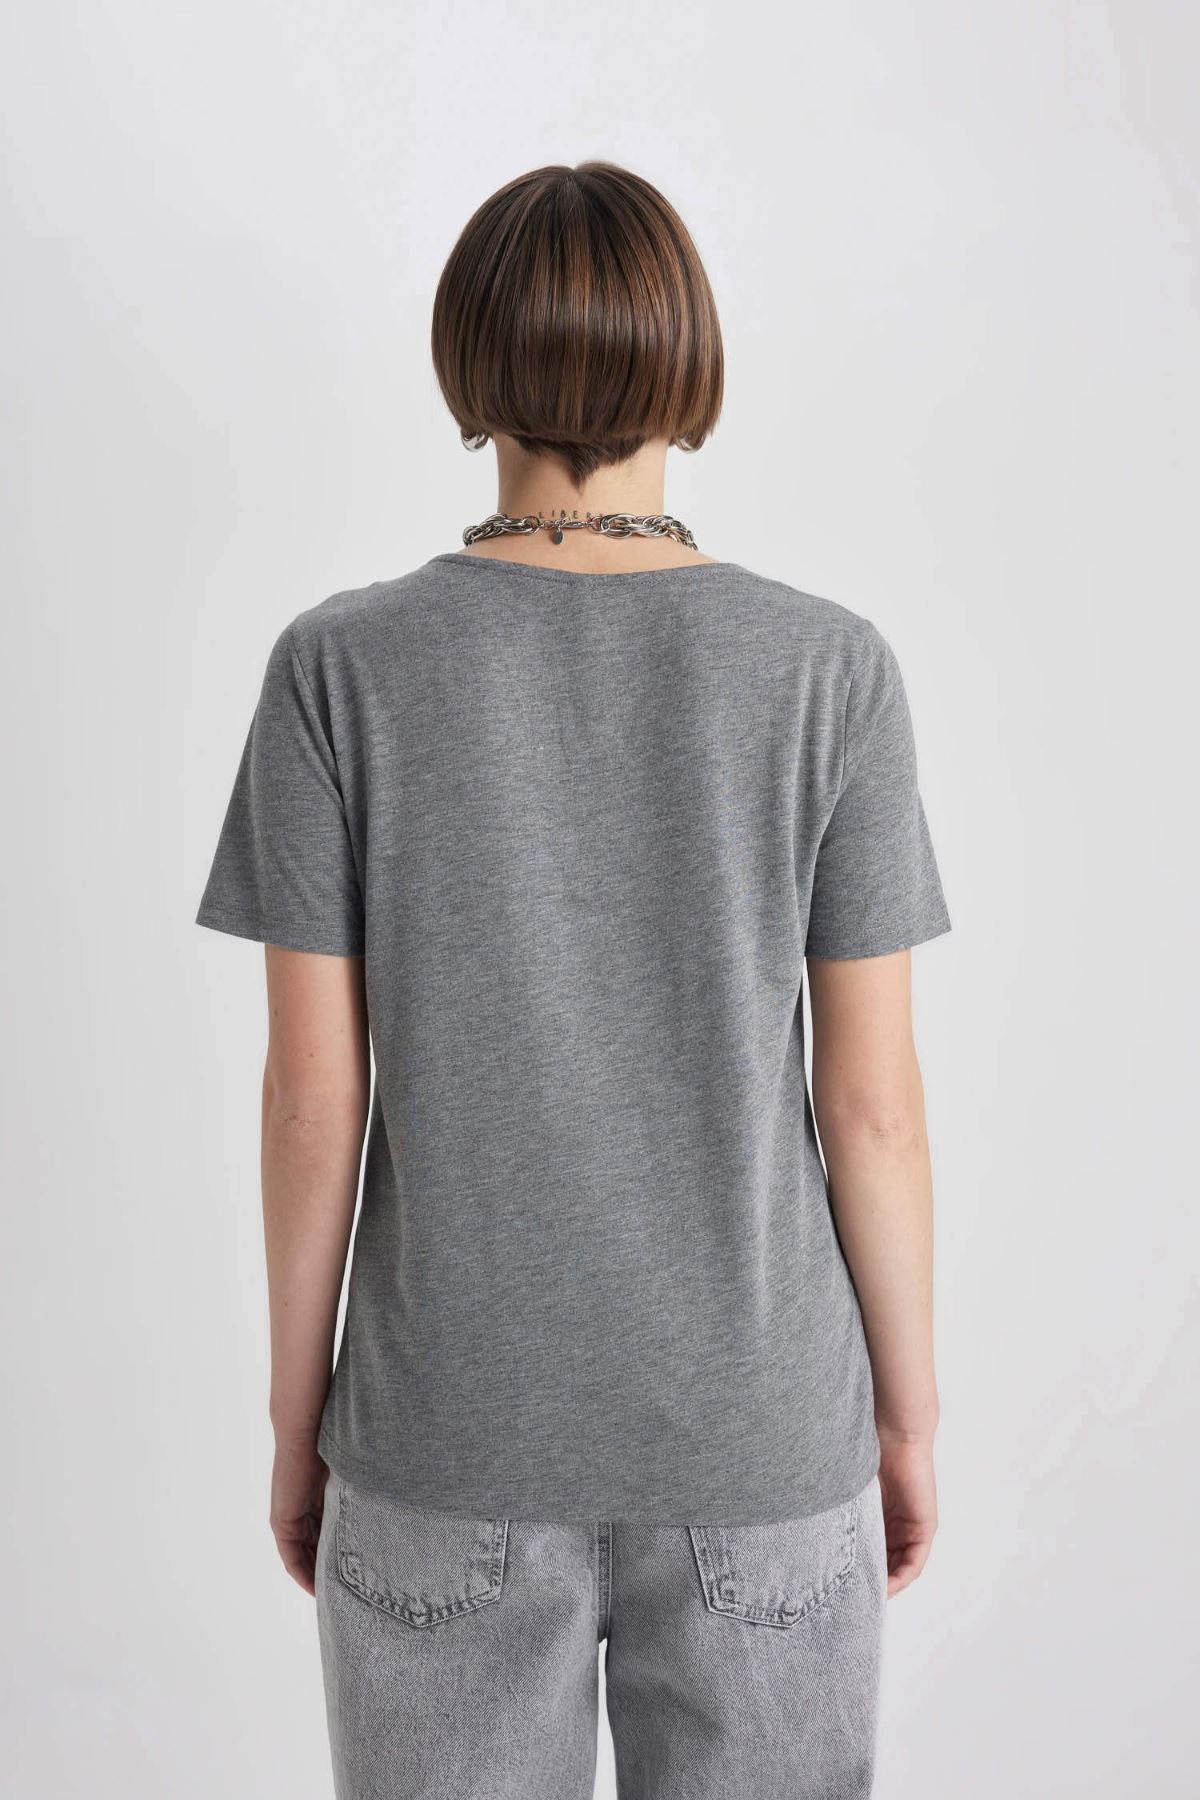 Defacto Kadın Antrasit Tişört - K5057AZ/AR53